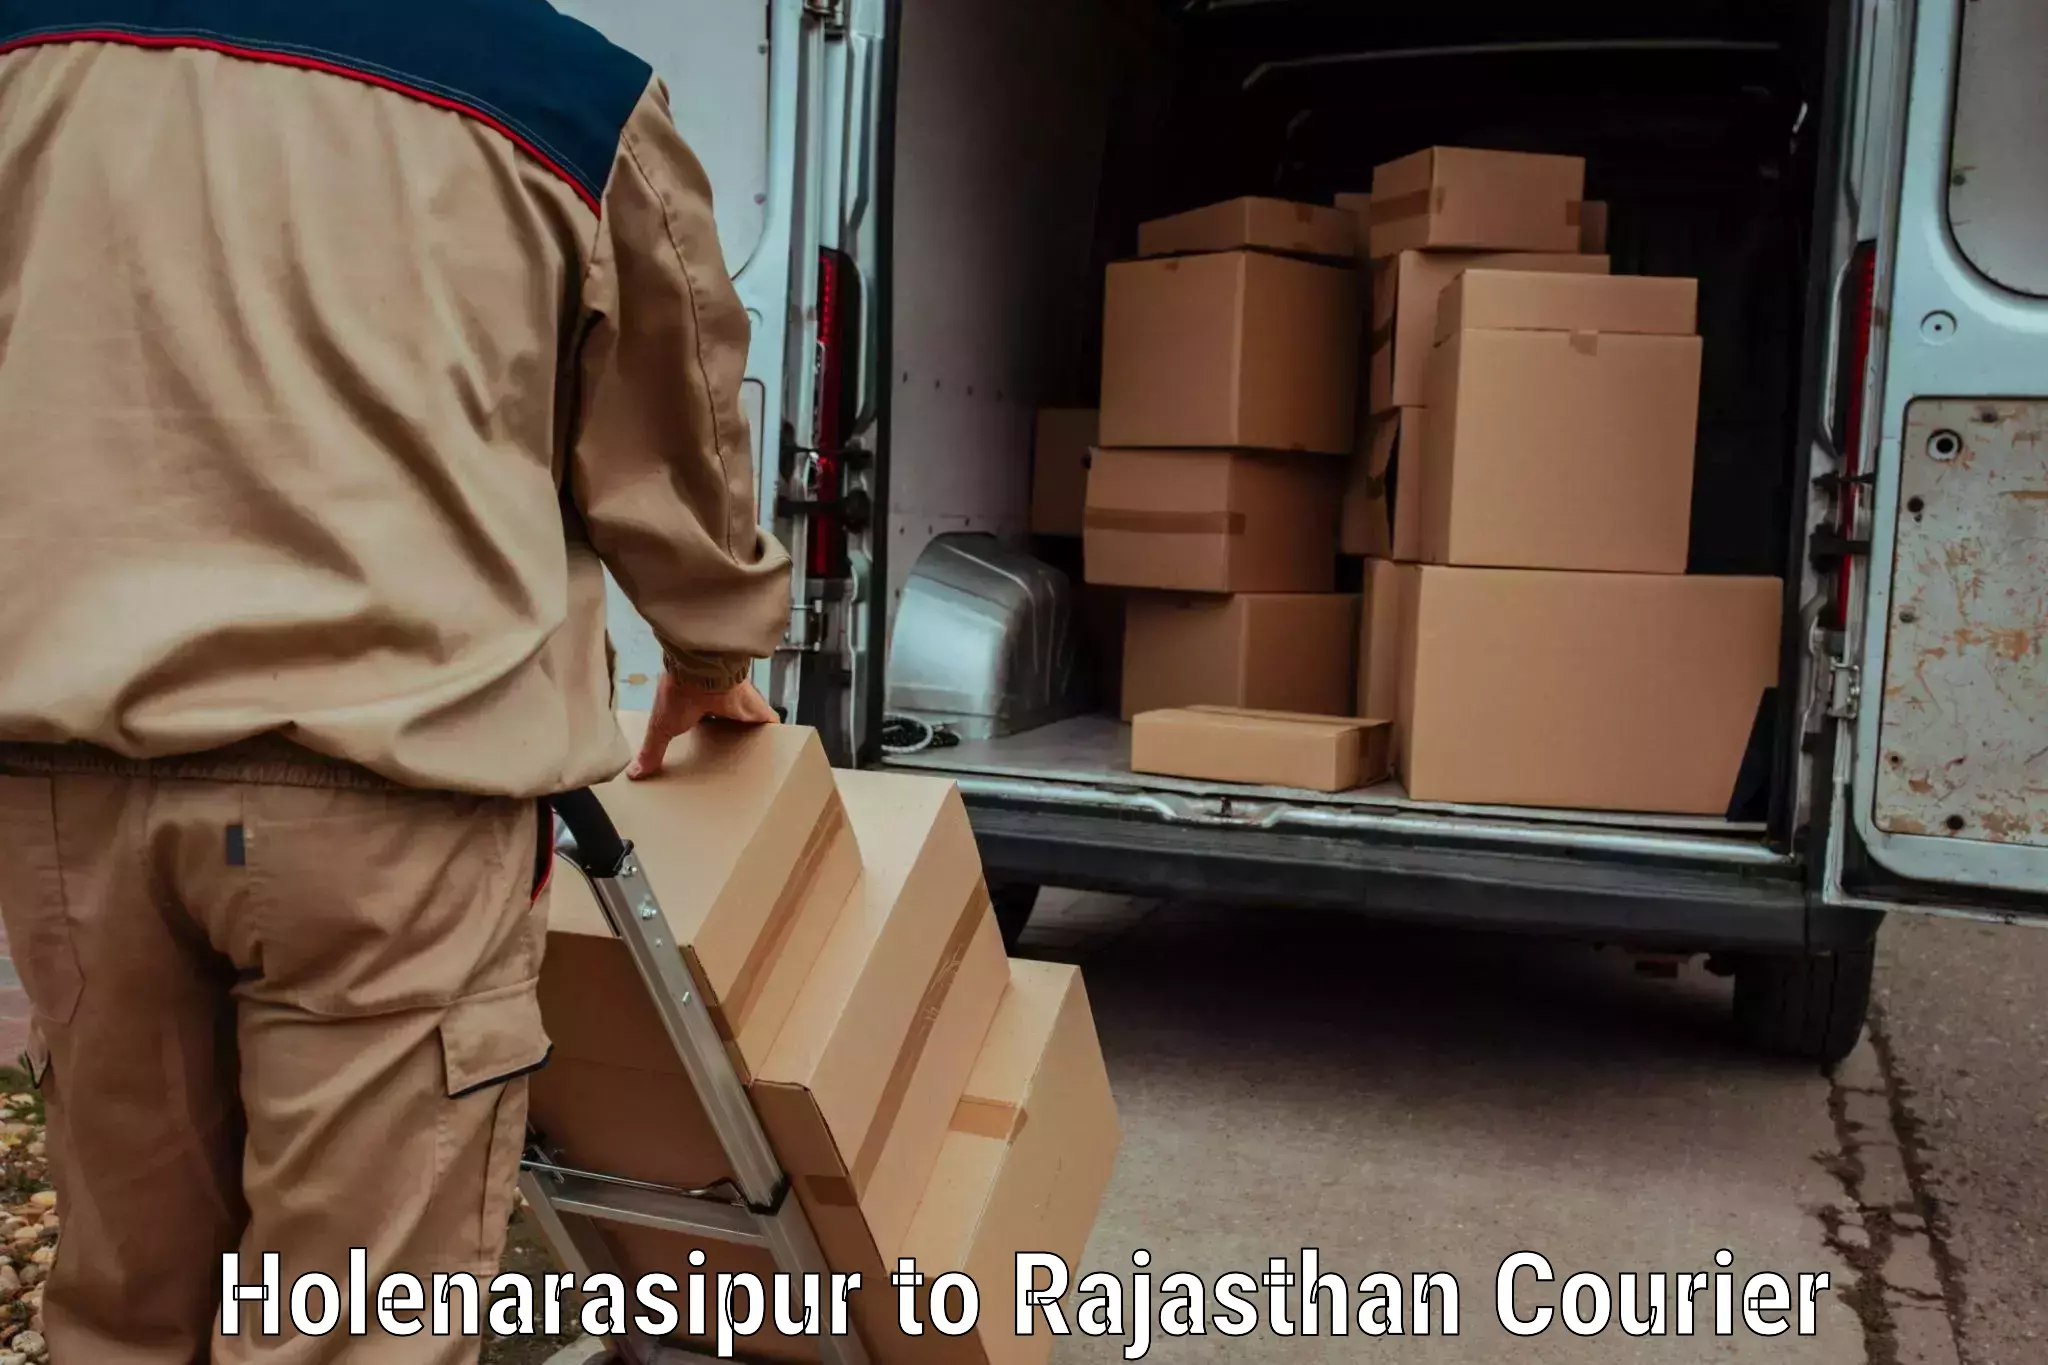 Global courier networks Holenarasipur to Sambhar